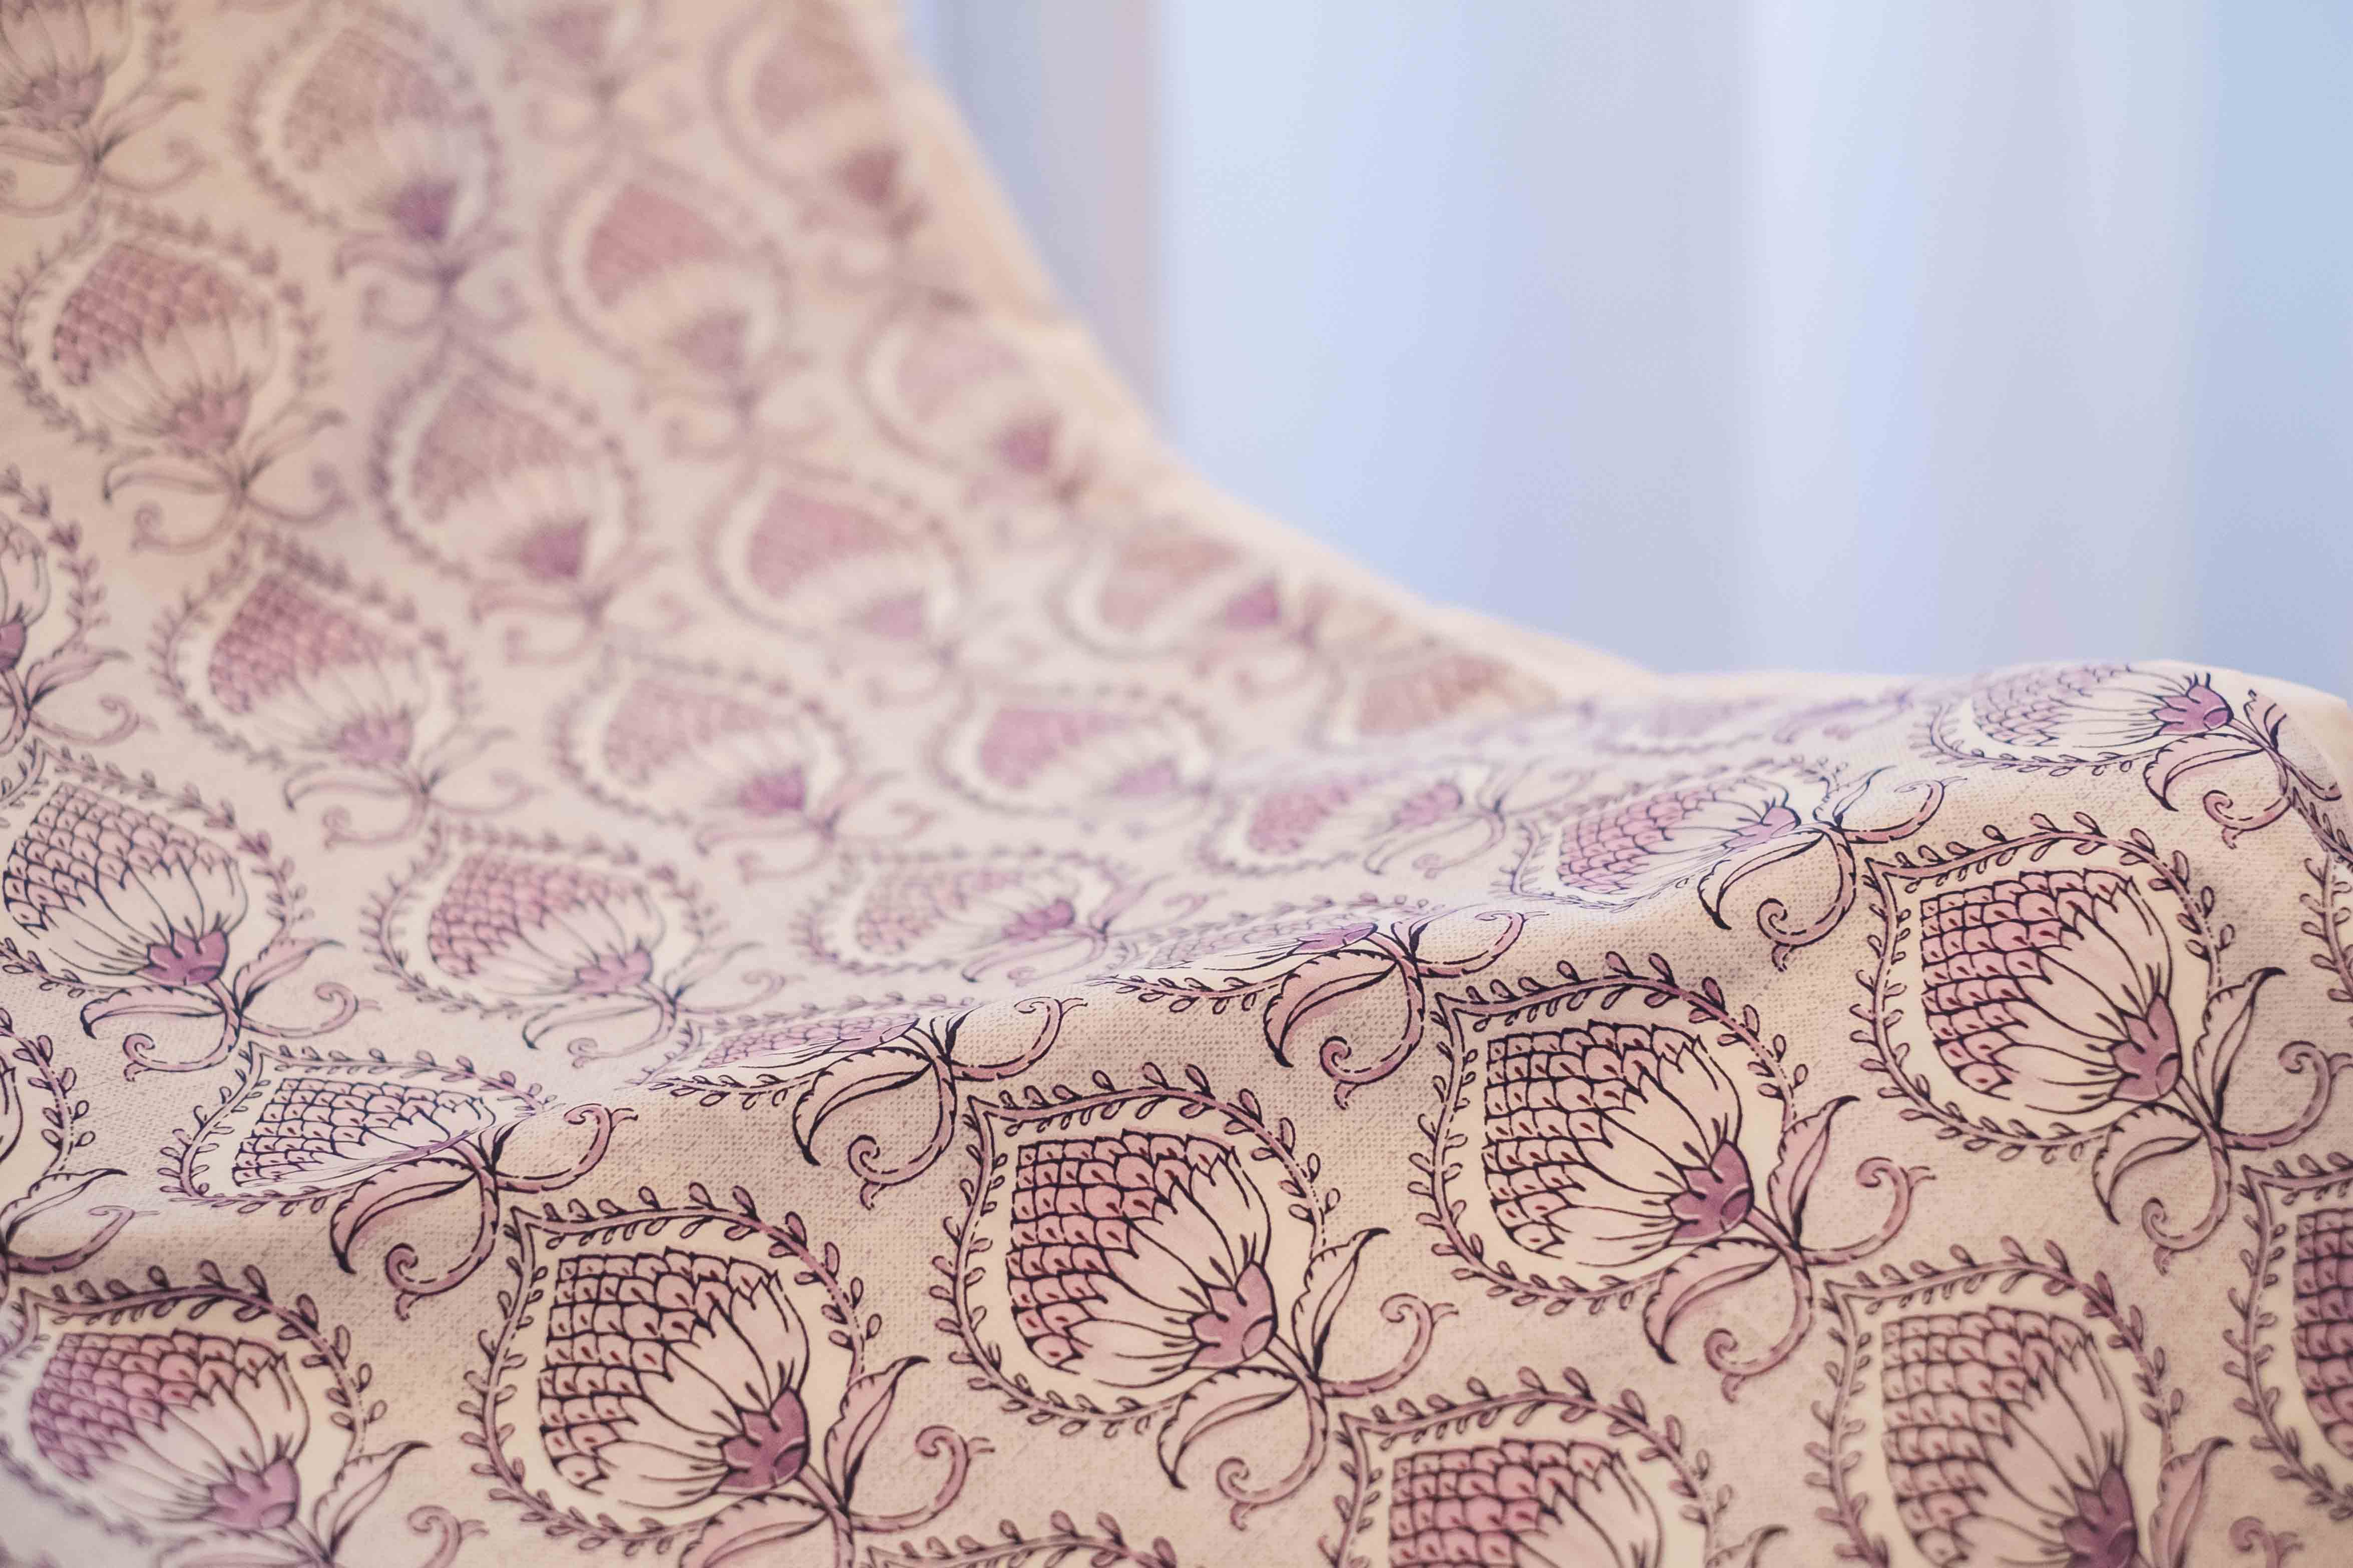 Détail de Pondichéry, Julie Lavarière collection, high-end bed linen made in France, on exclusive sale in Lyon